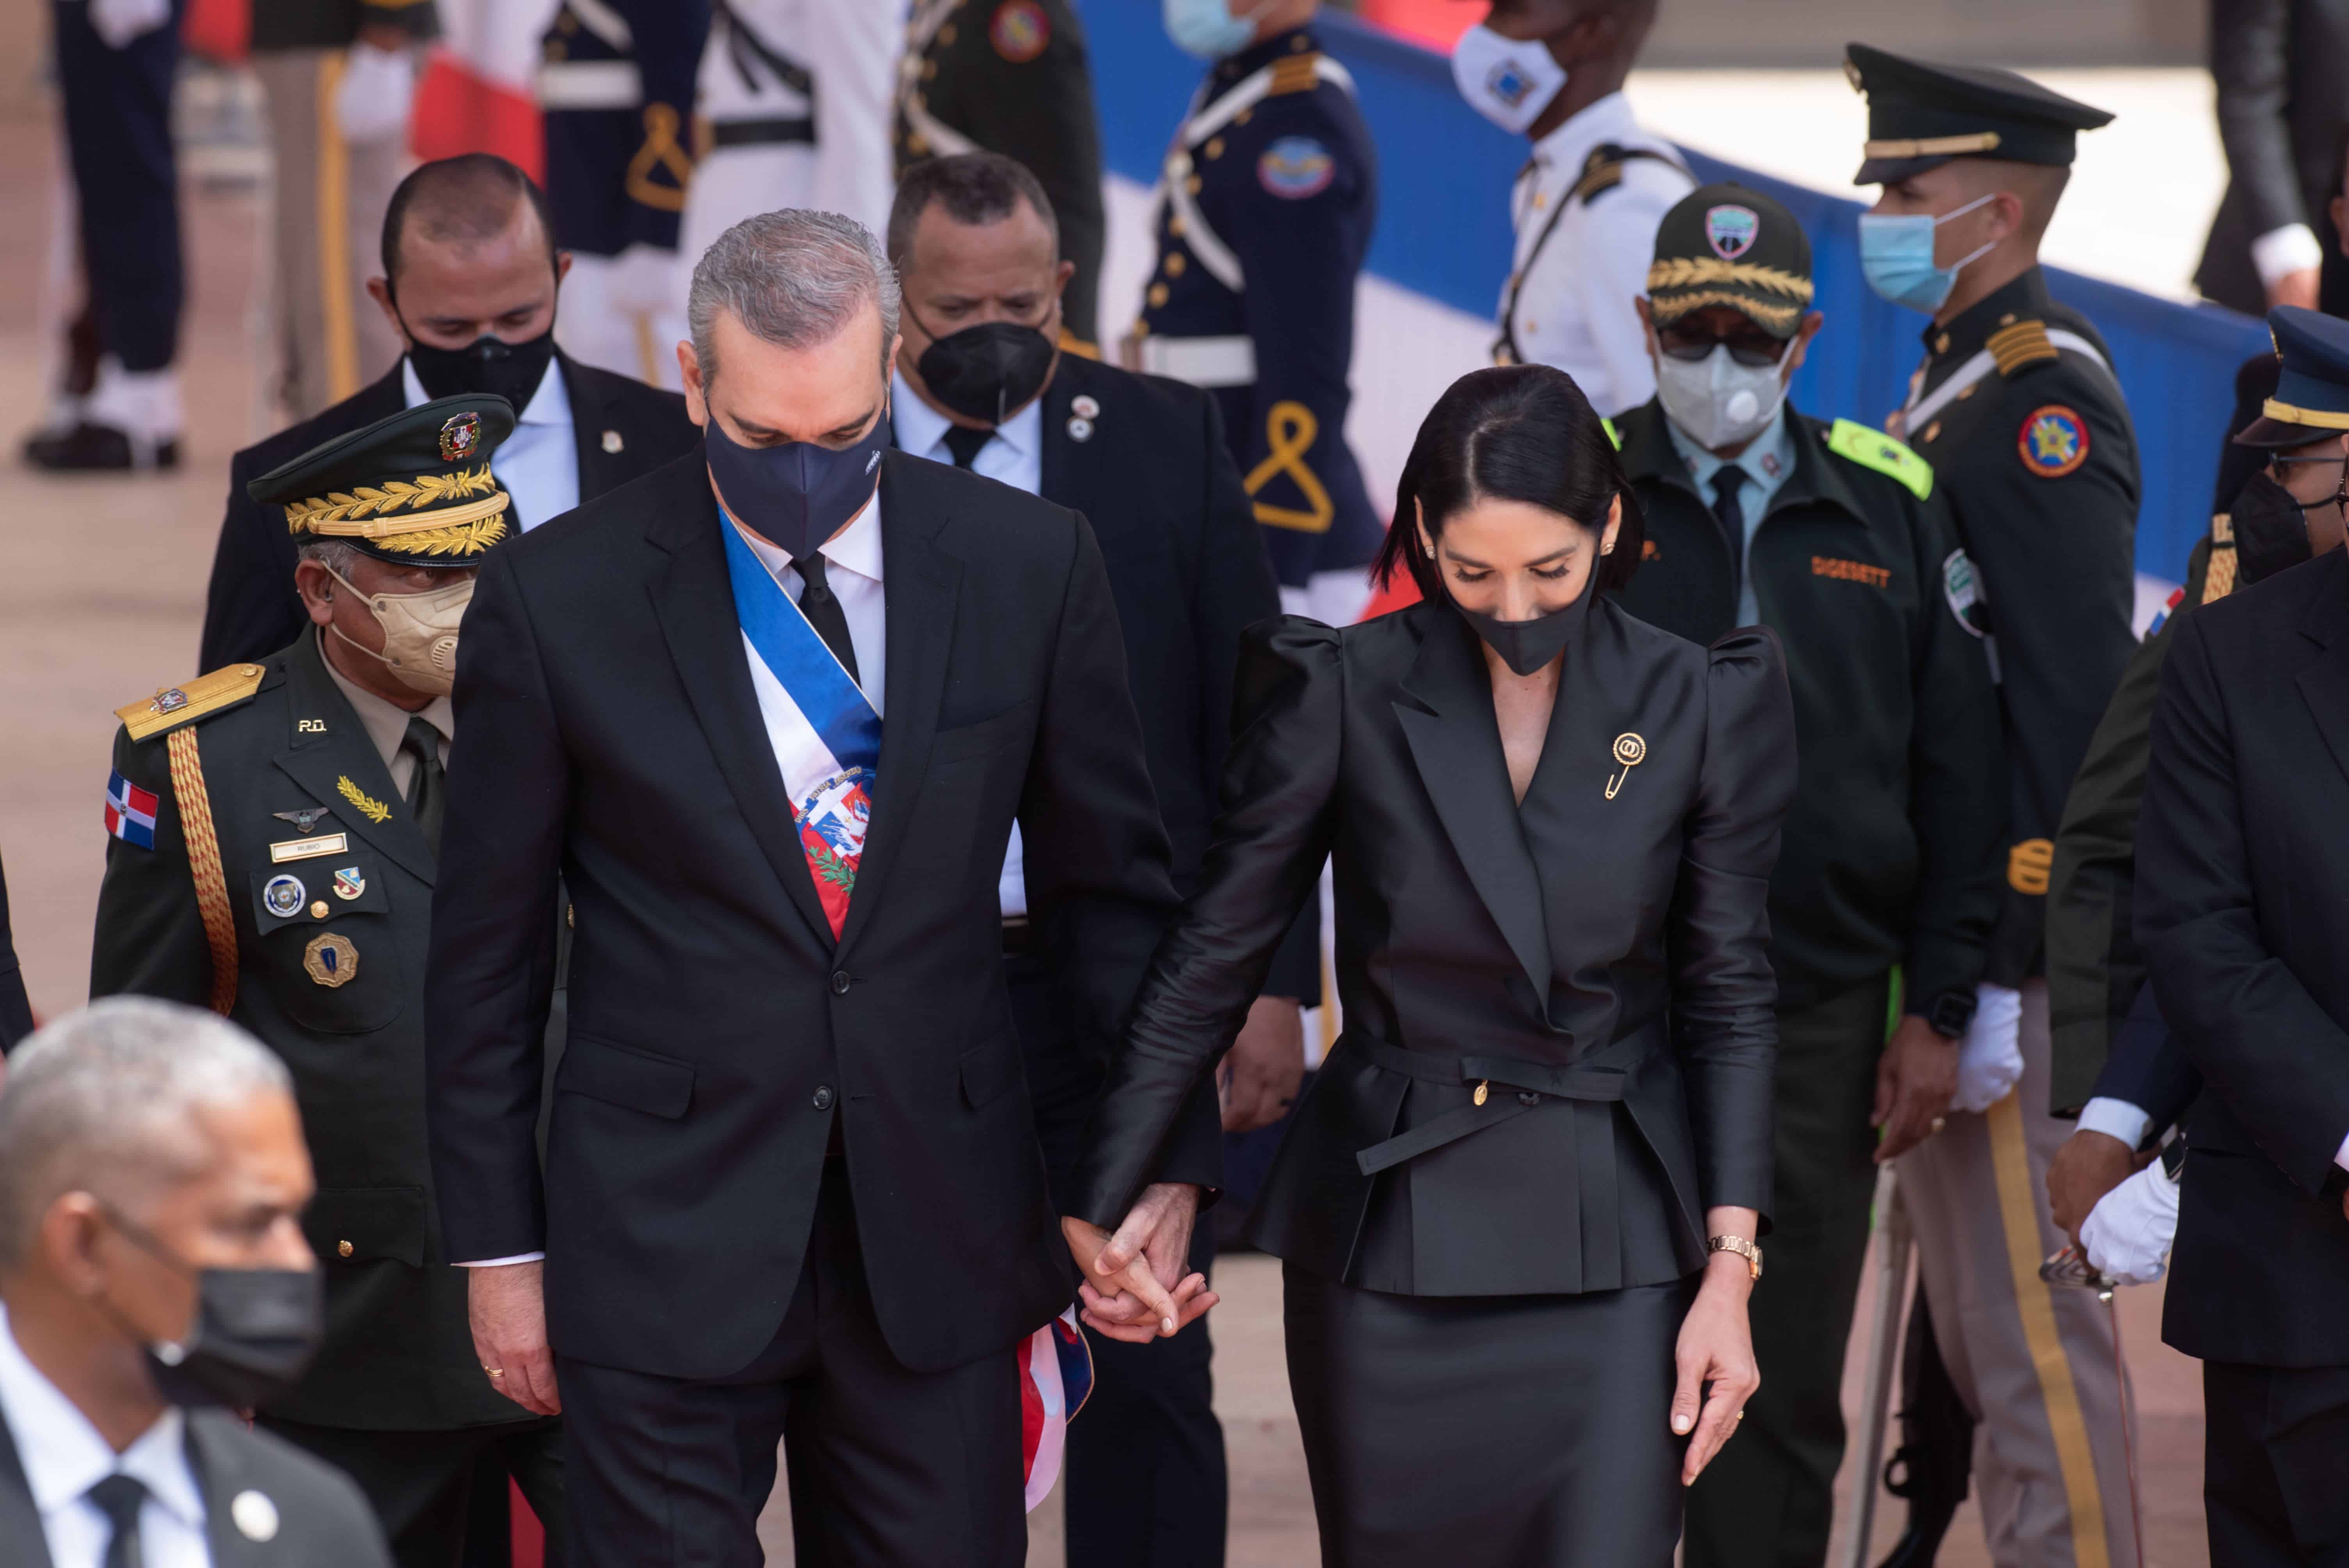 De la mano con Raquel Arbaje, así arribó el presidente Luis Abinader al Congreso de la República Dominicana para su primer discurso de rendición de cuentas.